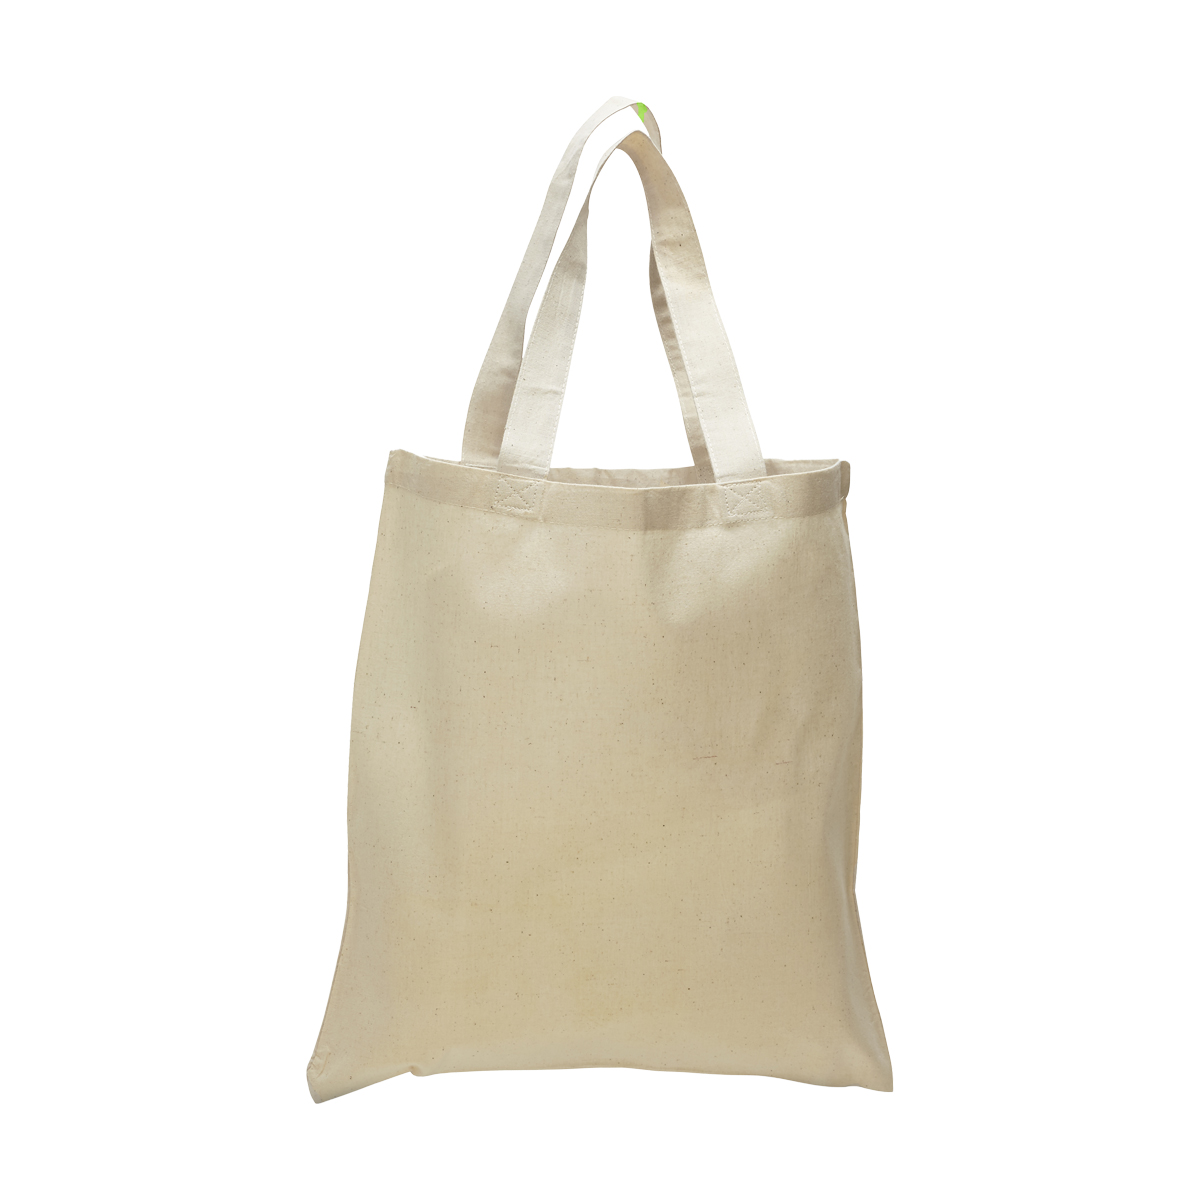 qtees- Economical Tote Bag